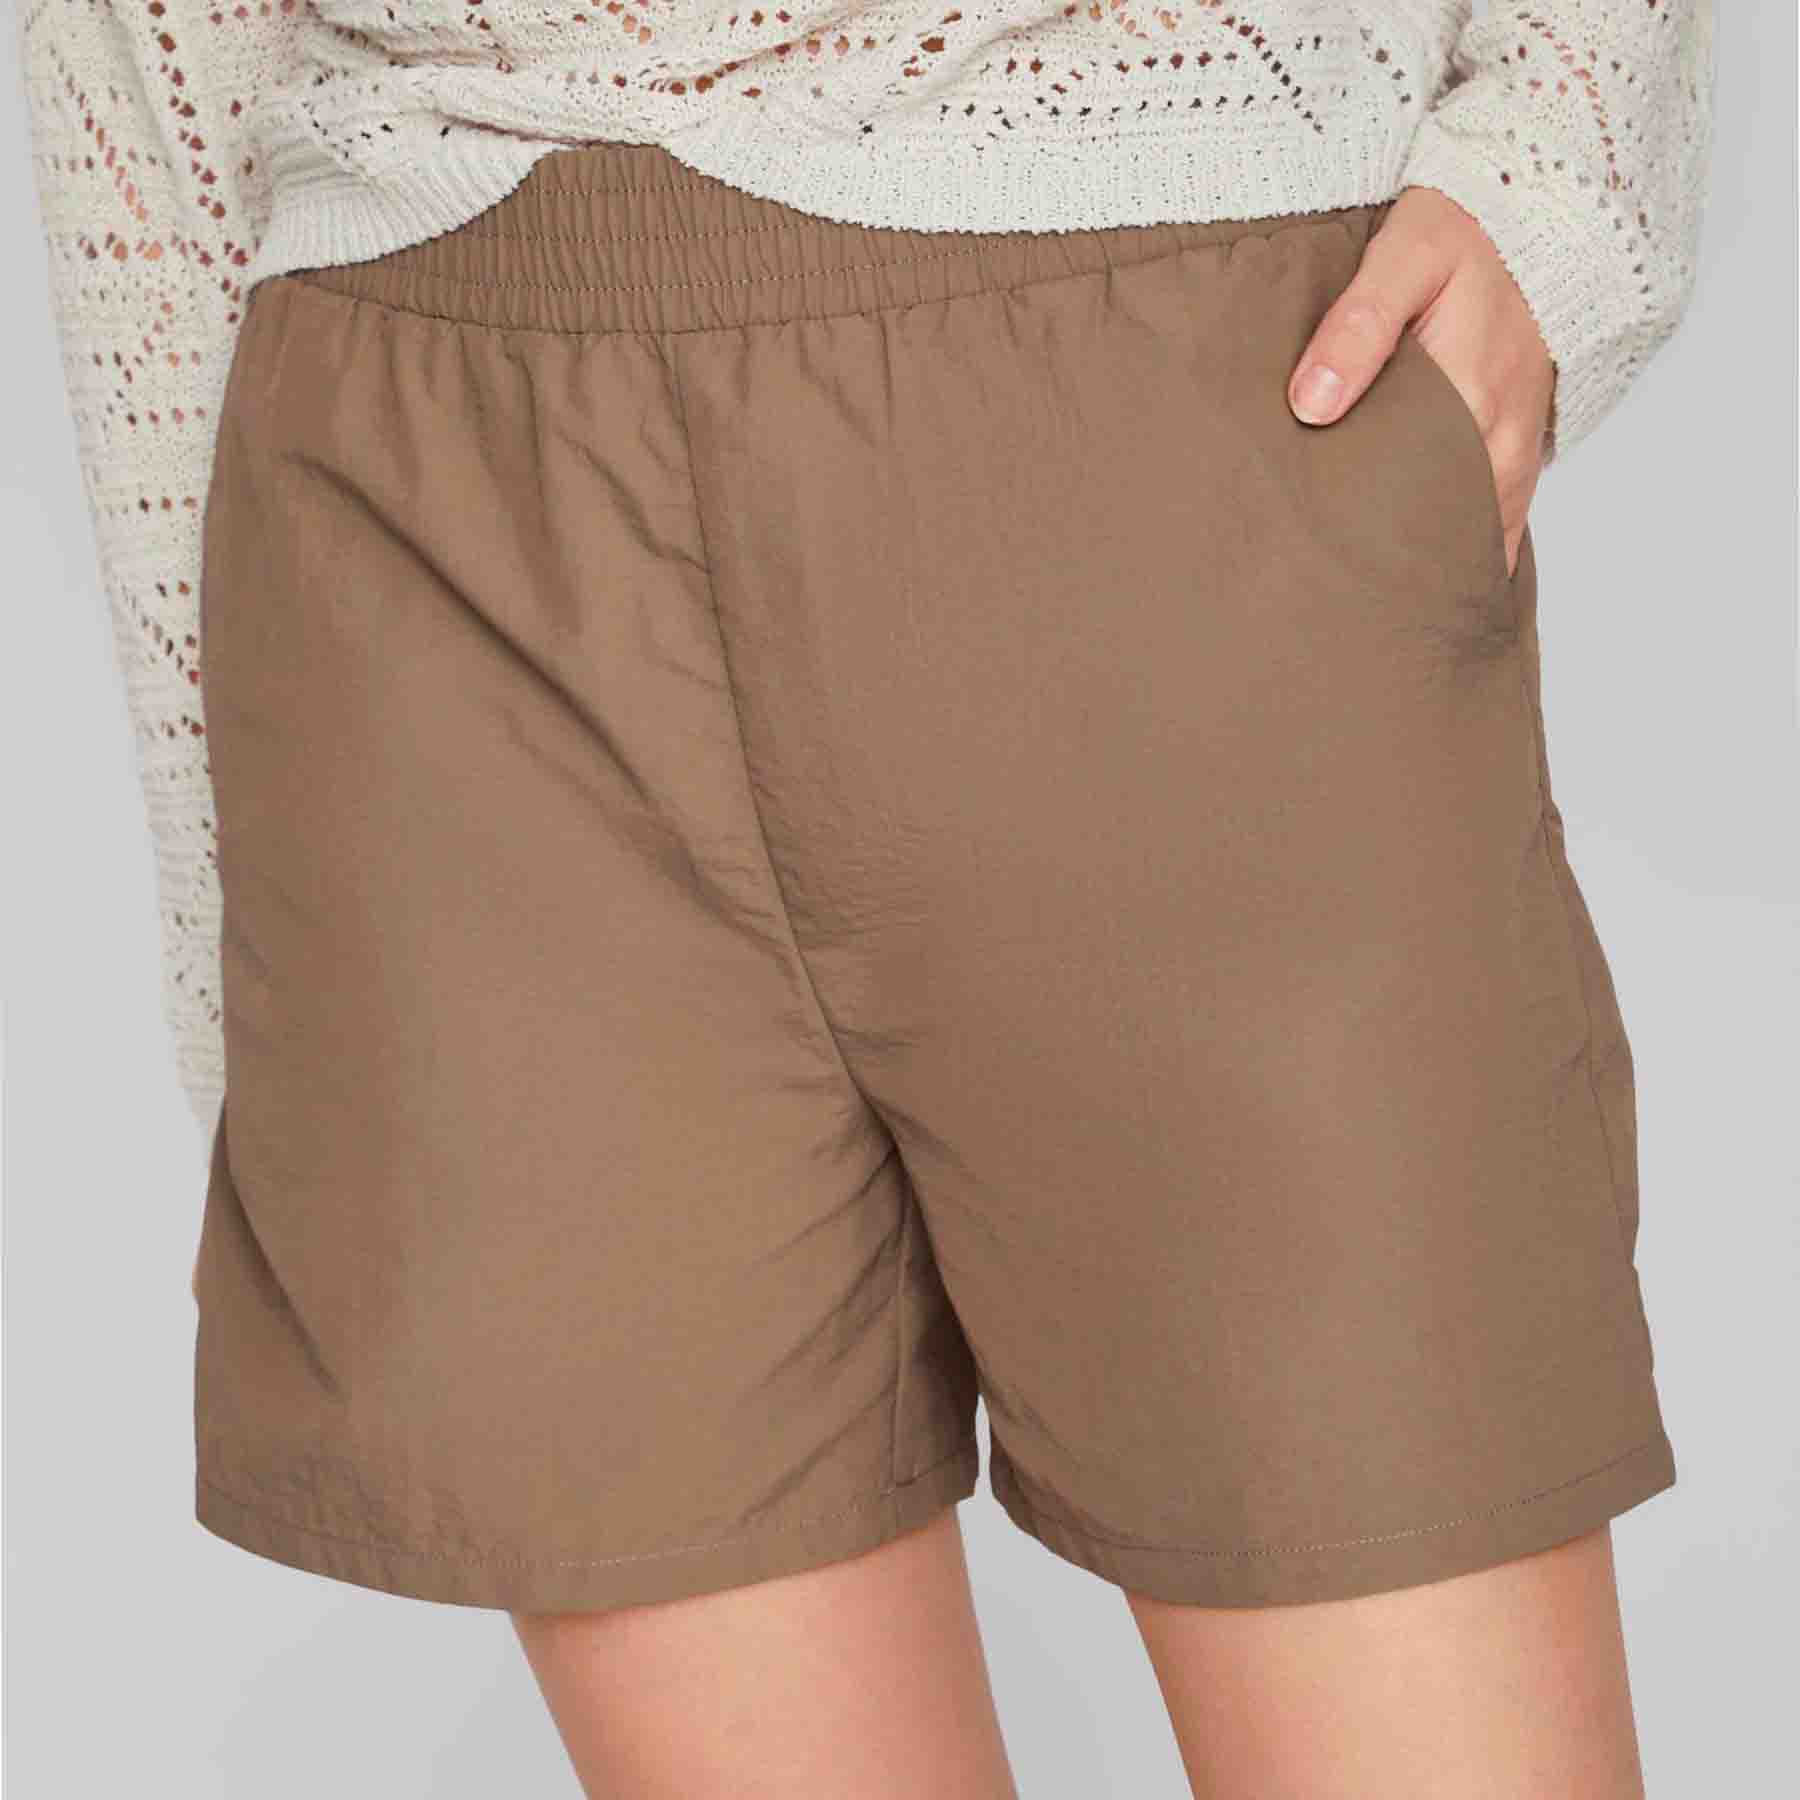 Vila - Vinyllie new hw shorts - Damebukser - Brun - 38